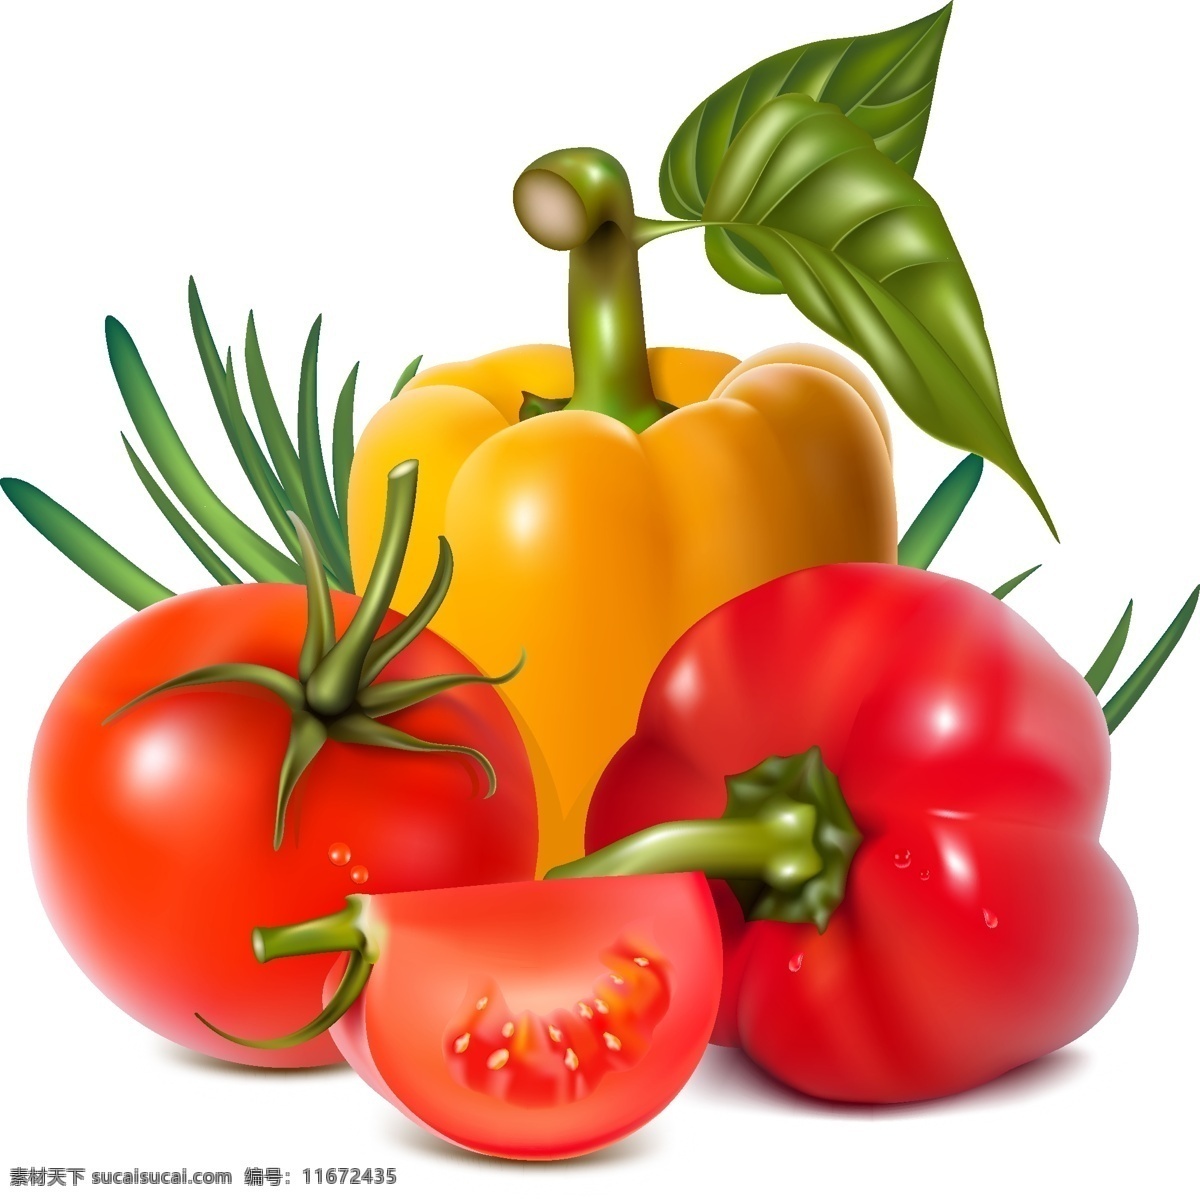 矢量 新鲜 蔬菜 彩 椒 番茄 番茄图片 辣椒 矢量水果 新鲜蔬菜 彩椒 矢量图 自然景观